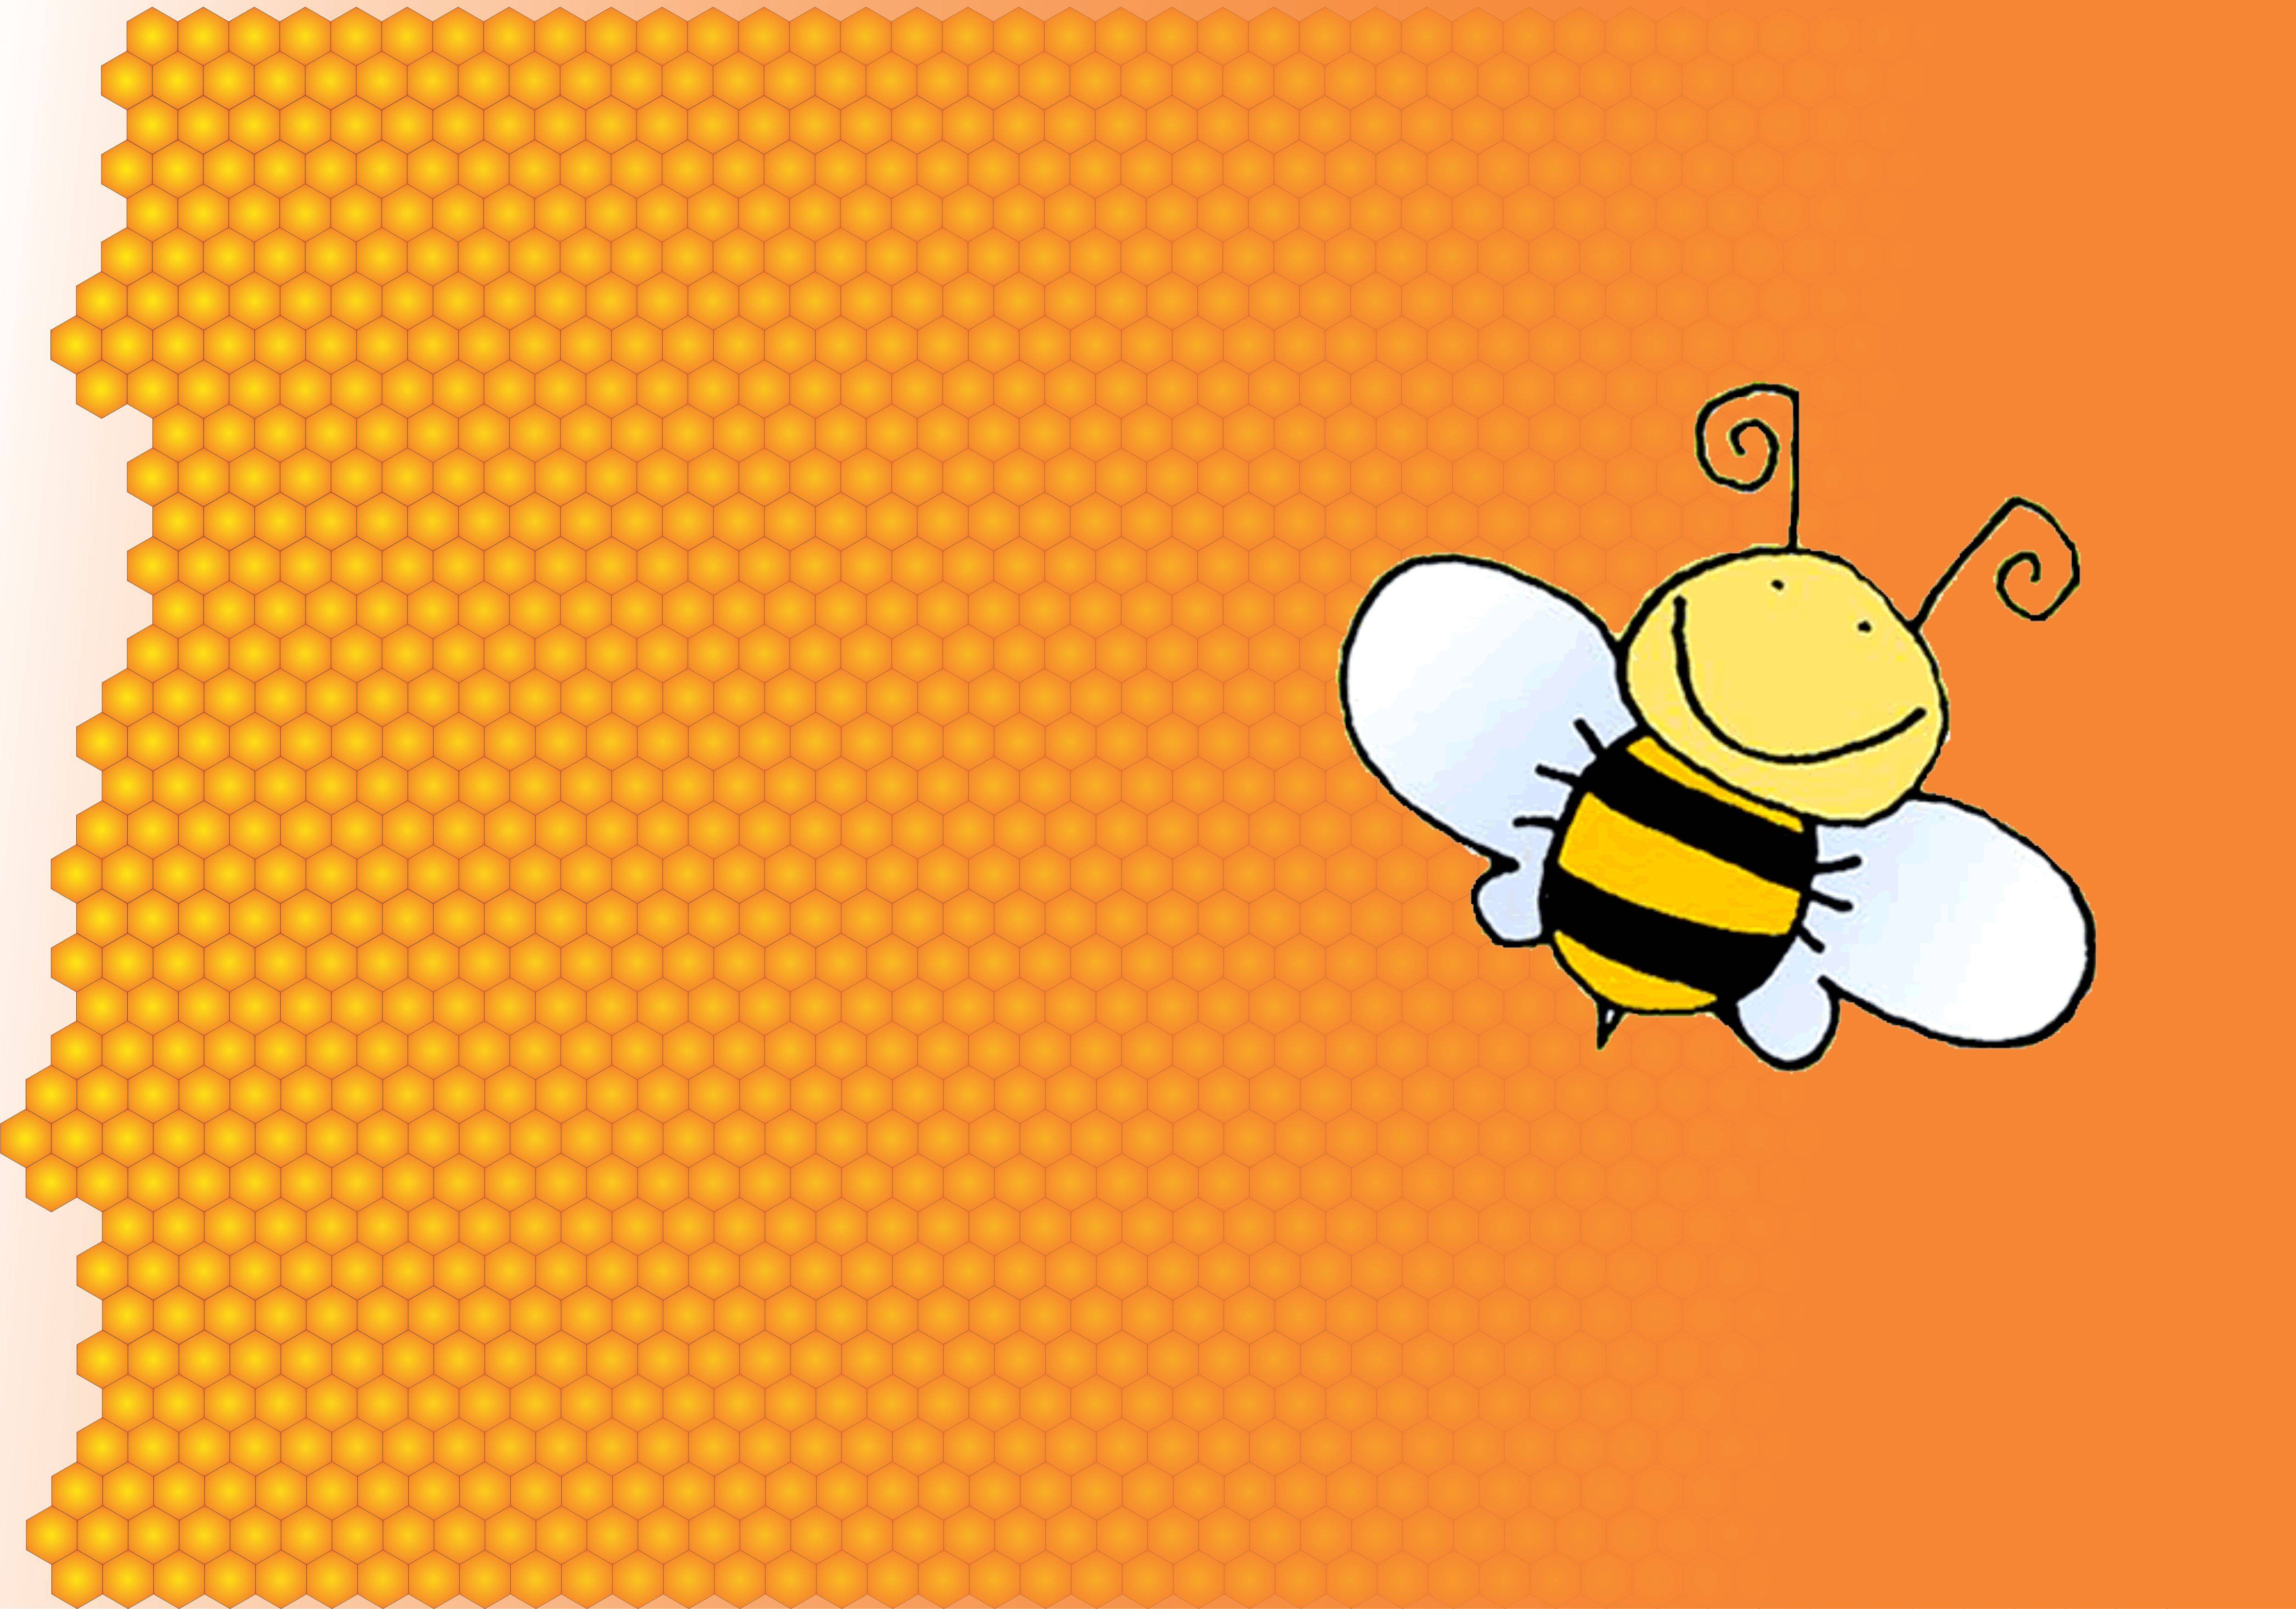 a cartoon bee